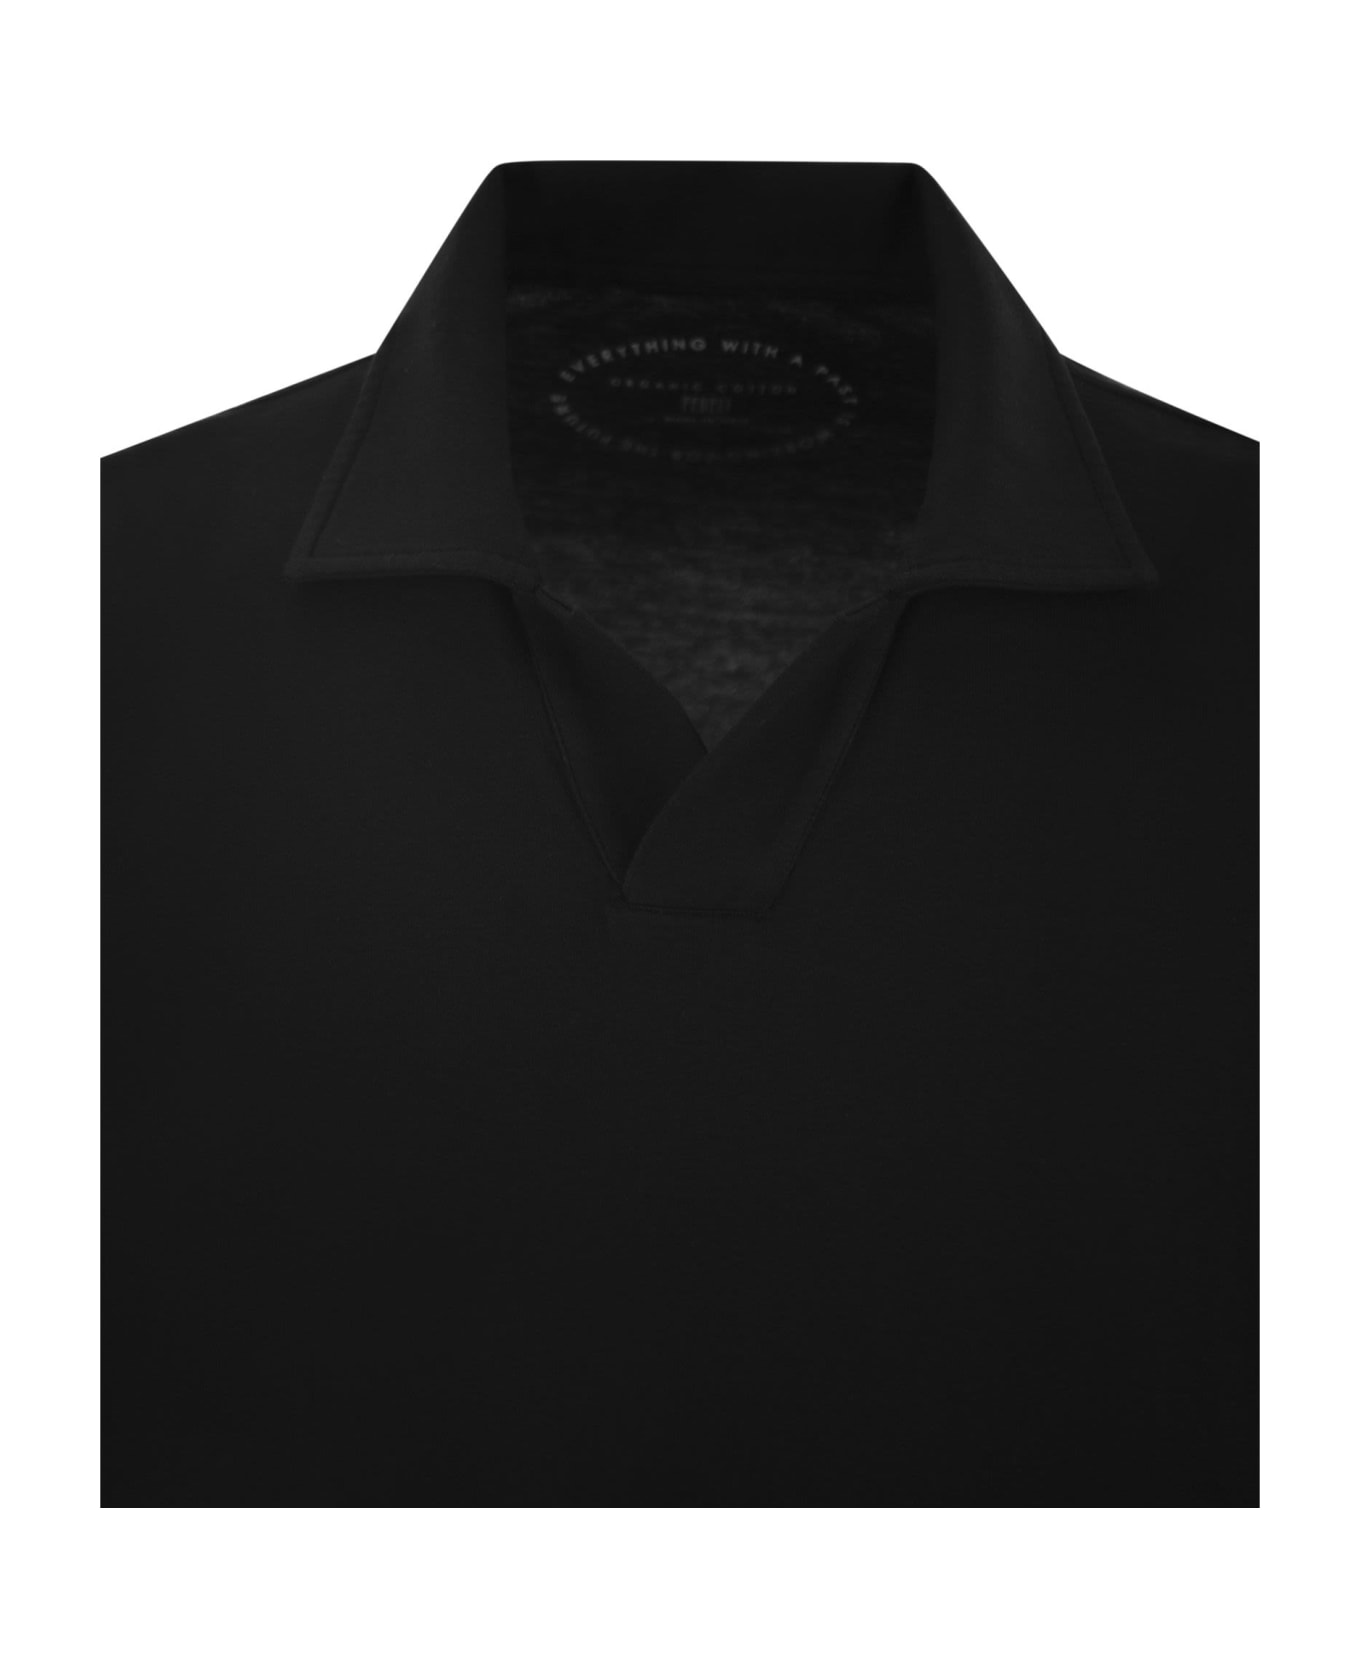 Fedeli Cotton Polo Shirt With Open Collar - Black